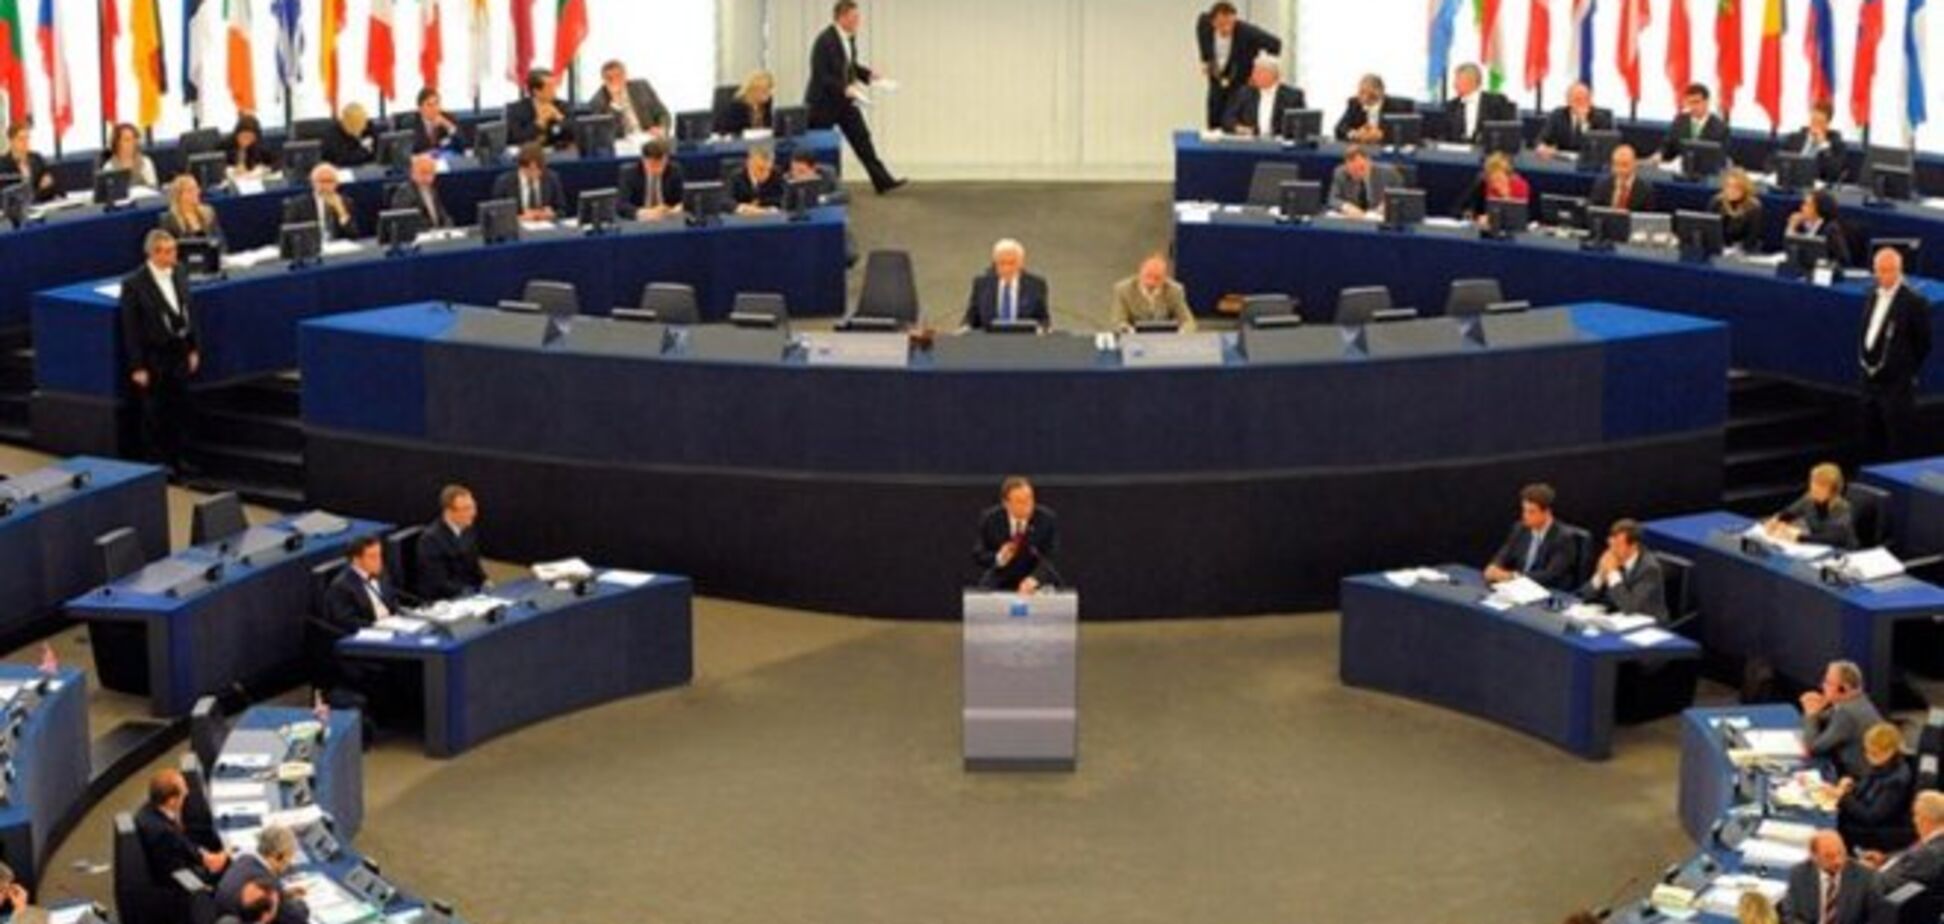 Европарламент собирается одобрить резолюцию по ситуации в Украине 13 января